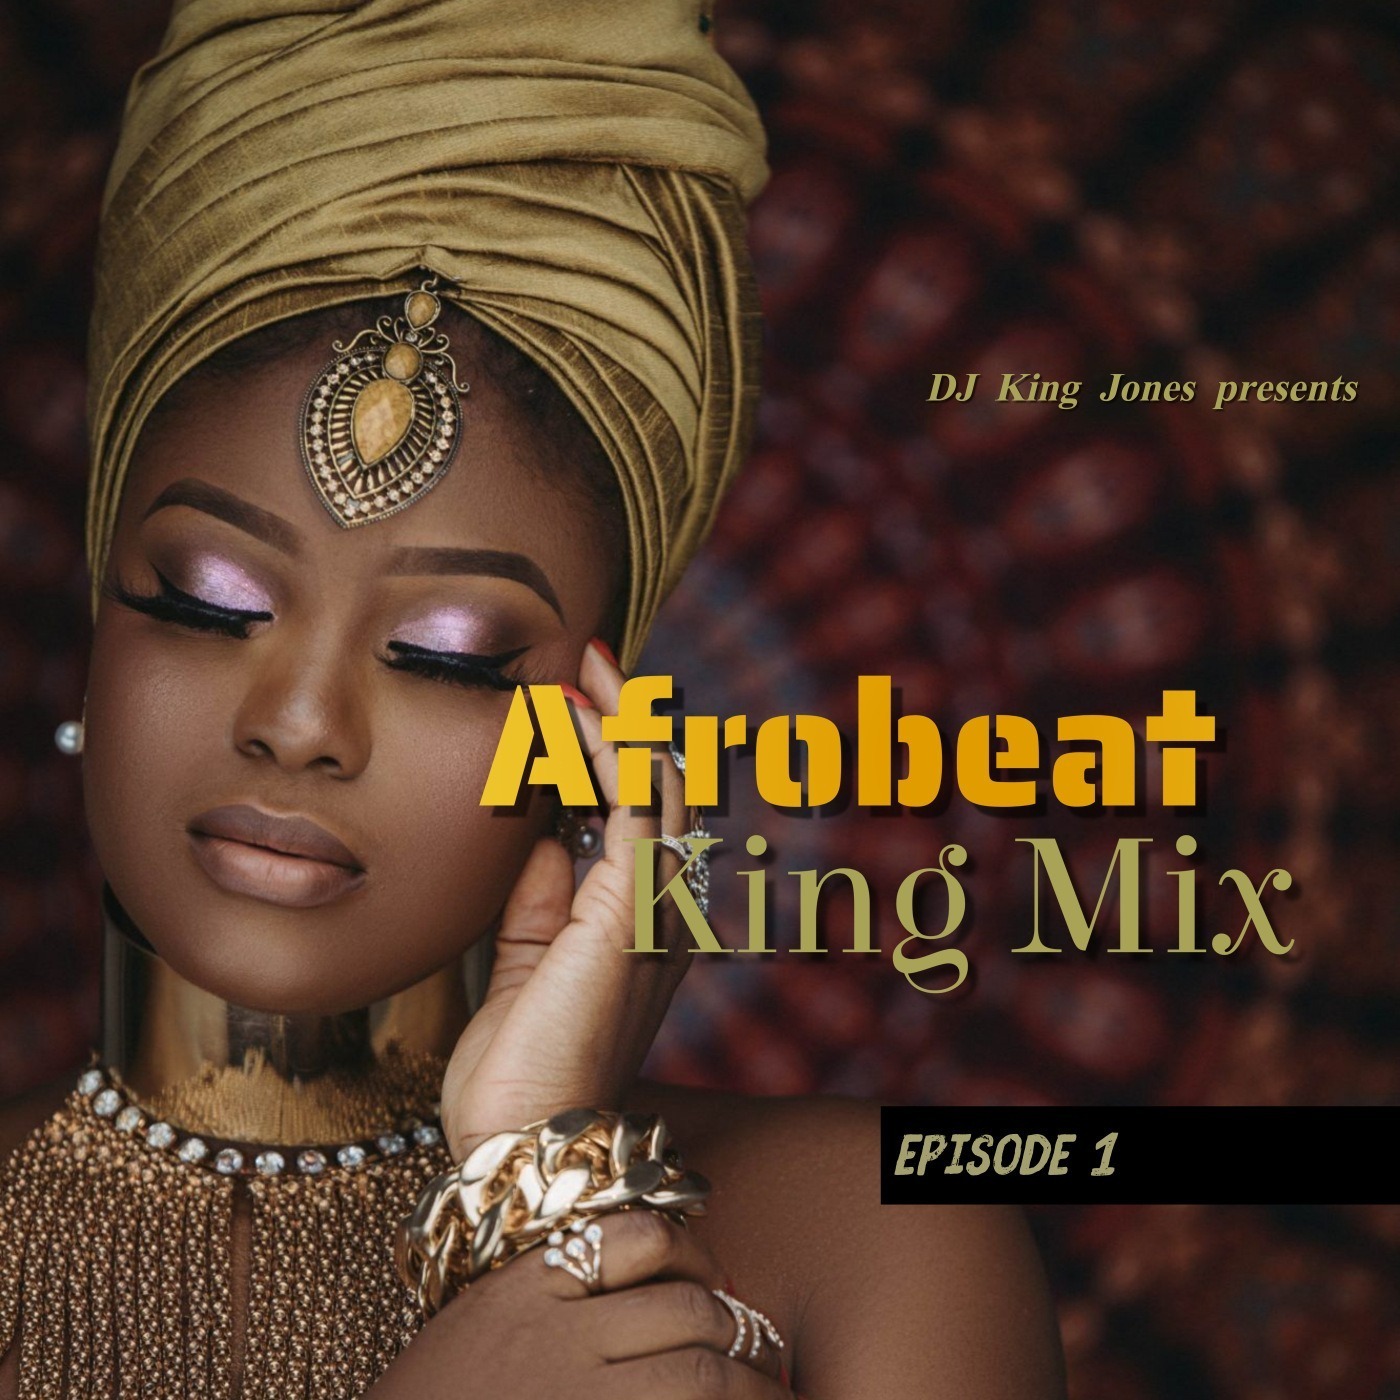 Afrobeat King Mix (Episode 1) Image